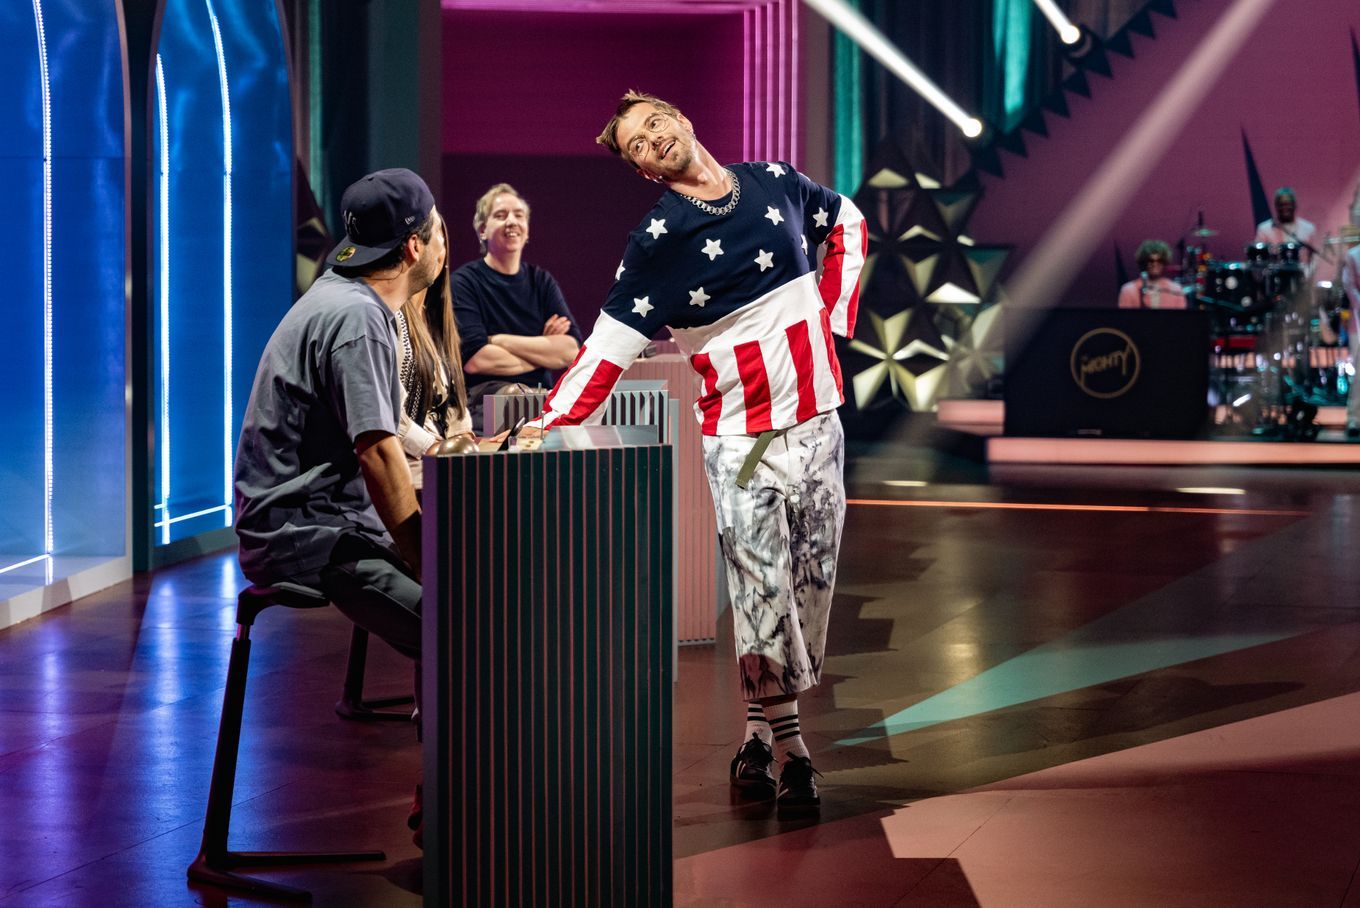 Joko schmuggelt sich bei 'The Voice' als Kandidat ein - und verliert danach seine Show